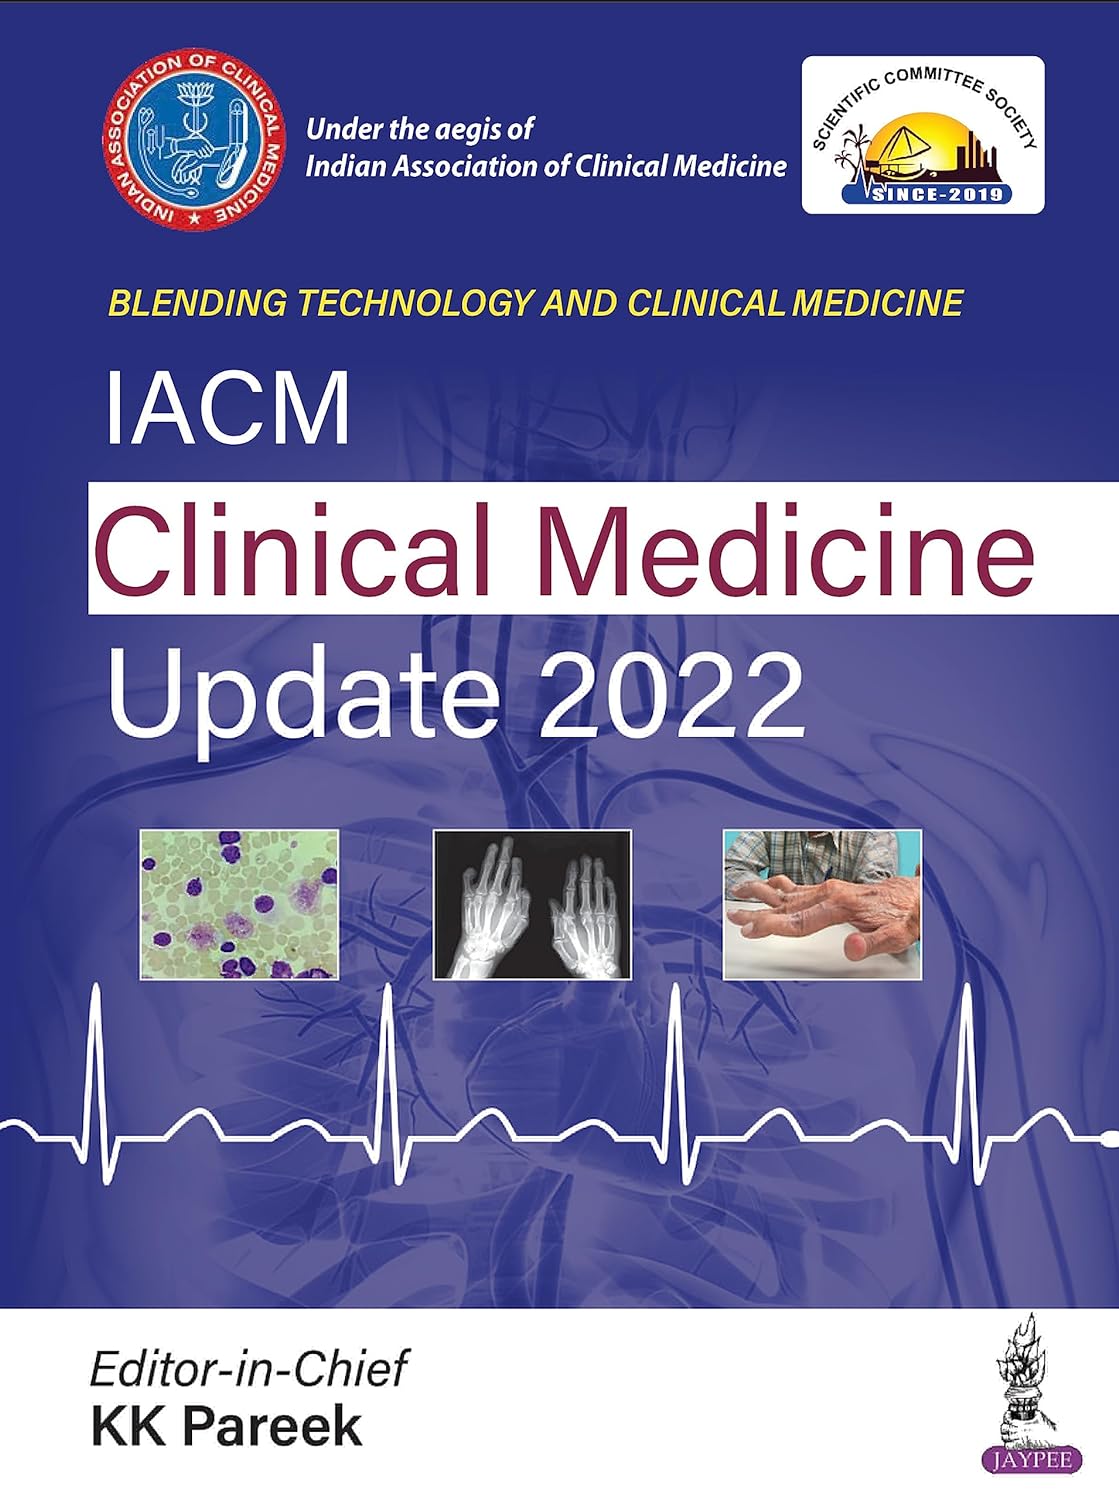 IACM Clinical Medicine Update_ 2022 